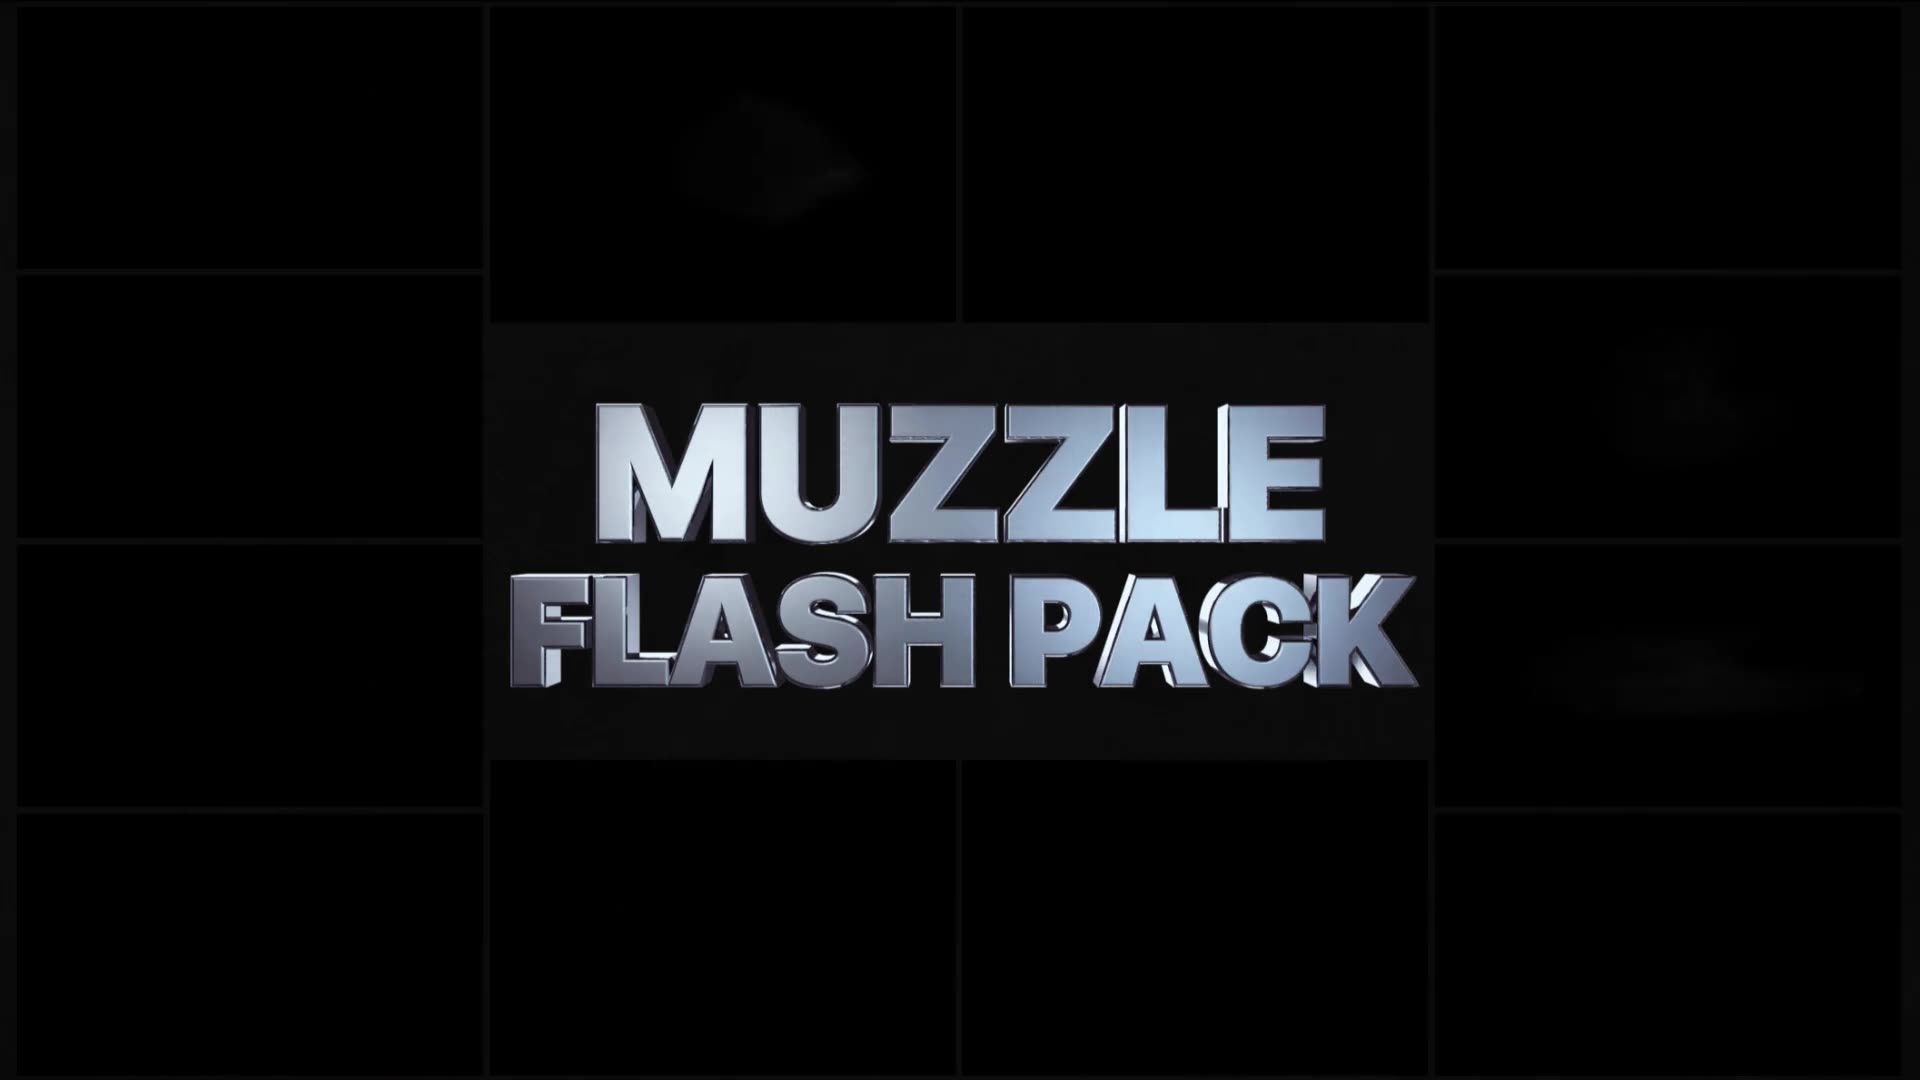 Muzzle Flash Pack 03 | Premiere Pro MOGRT Videohive 31840971 Premiere Pro Image 2